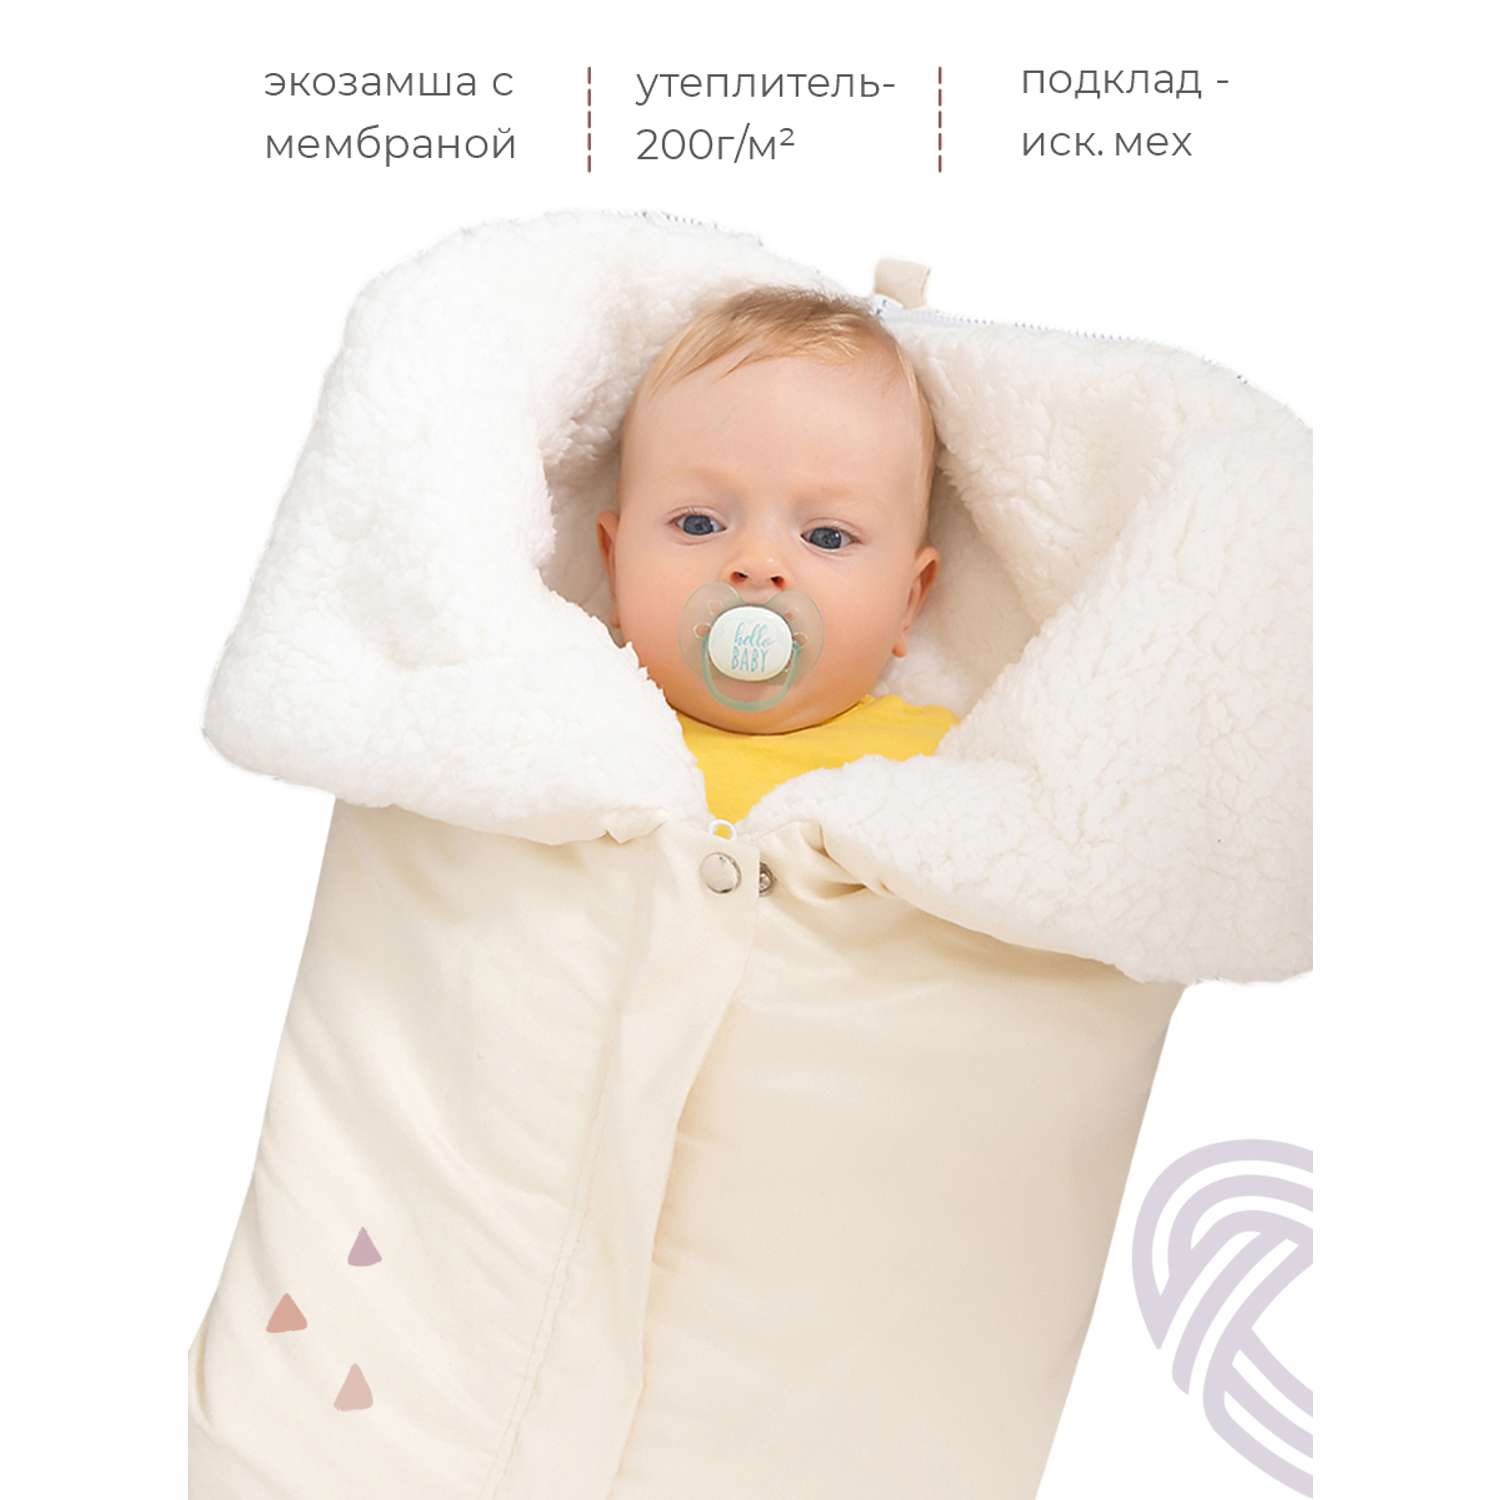 Конверт в коляску inlovery для новорожденного «Нортес» молочный - фото 3